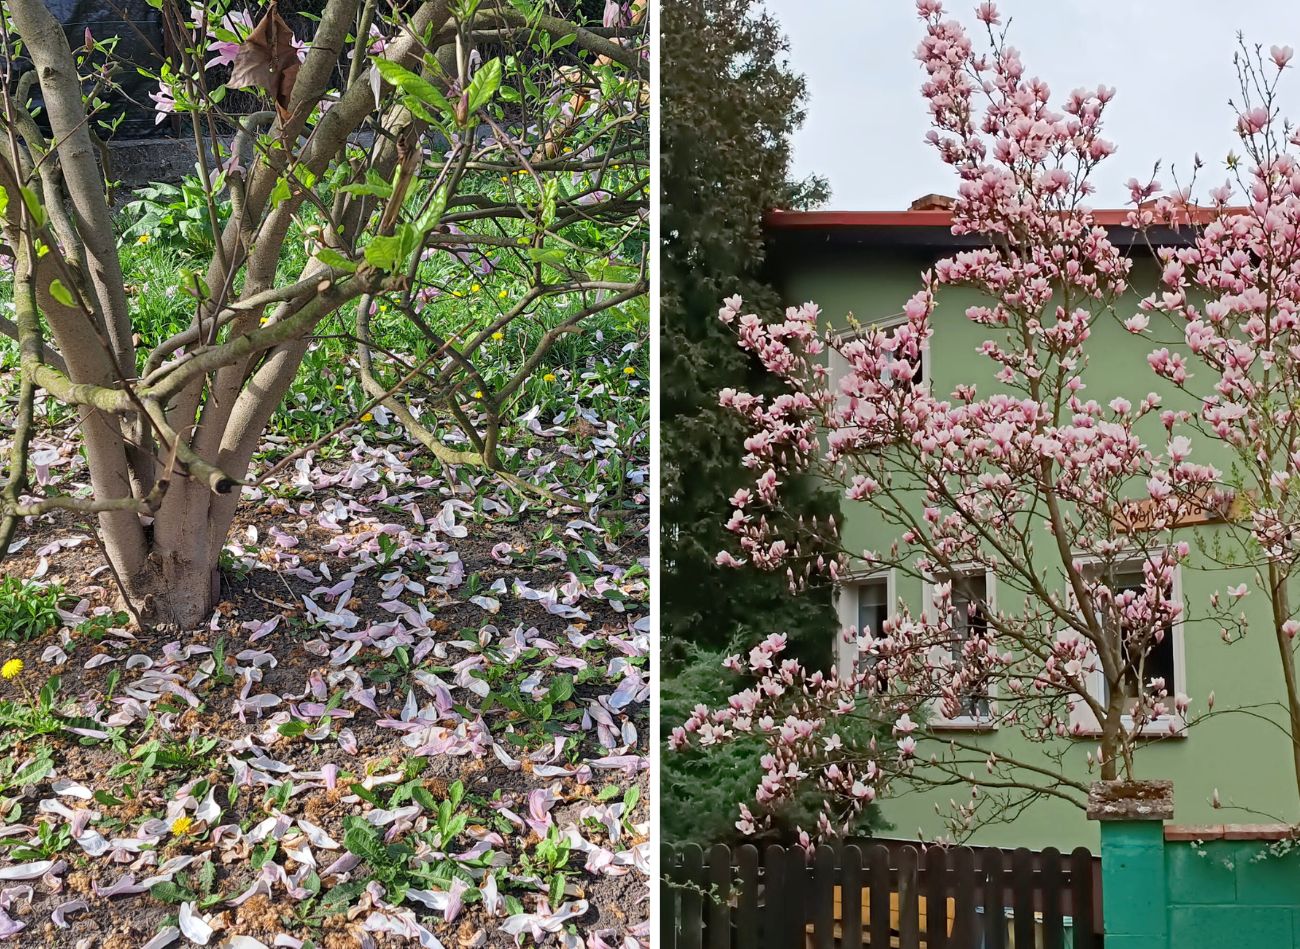  Po przycięciu magnolii, podlej ją specjalną odżywką. Krzew dostanie sił witalnych